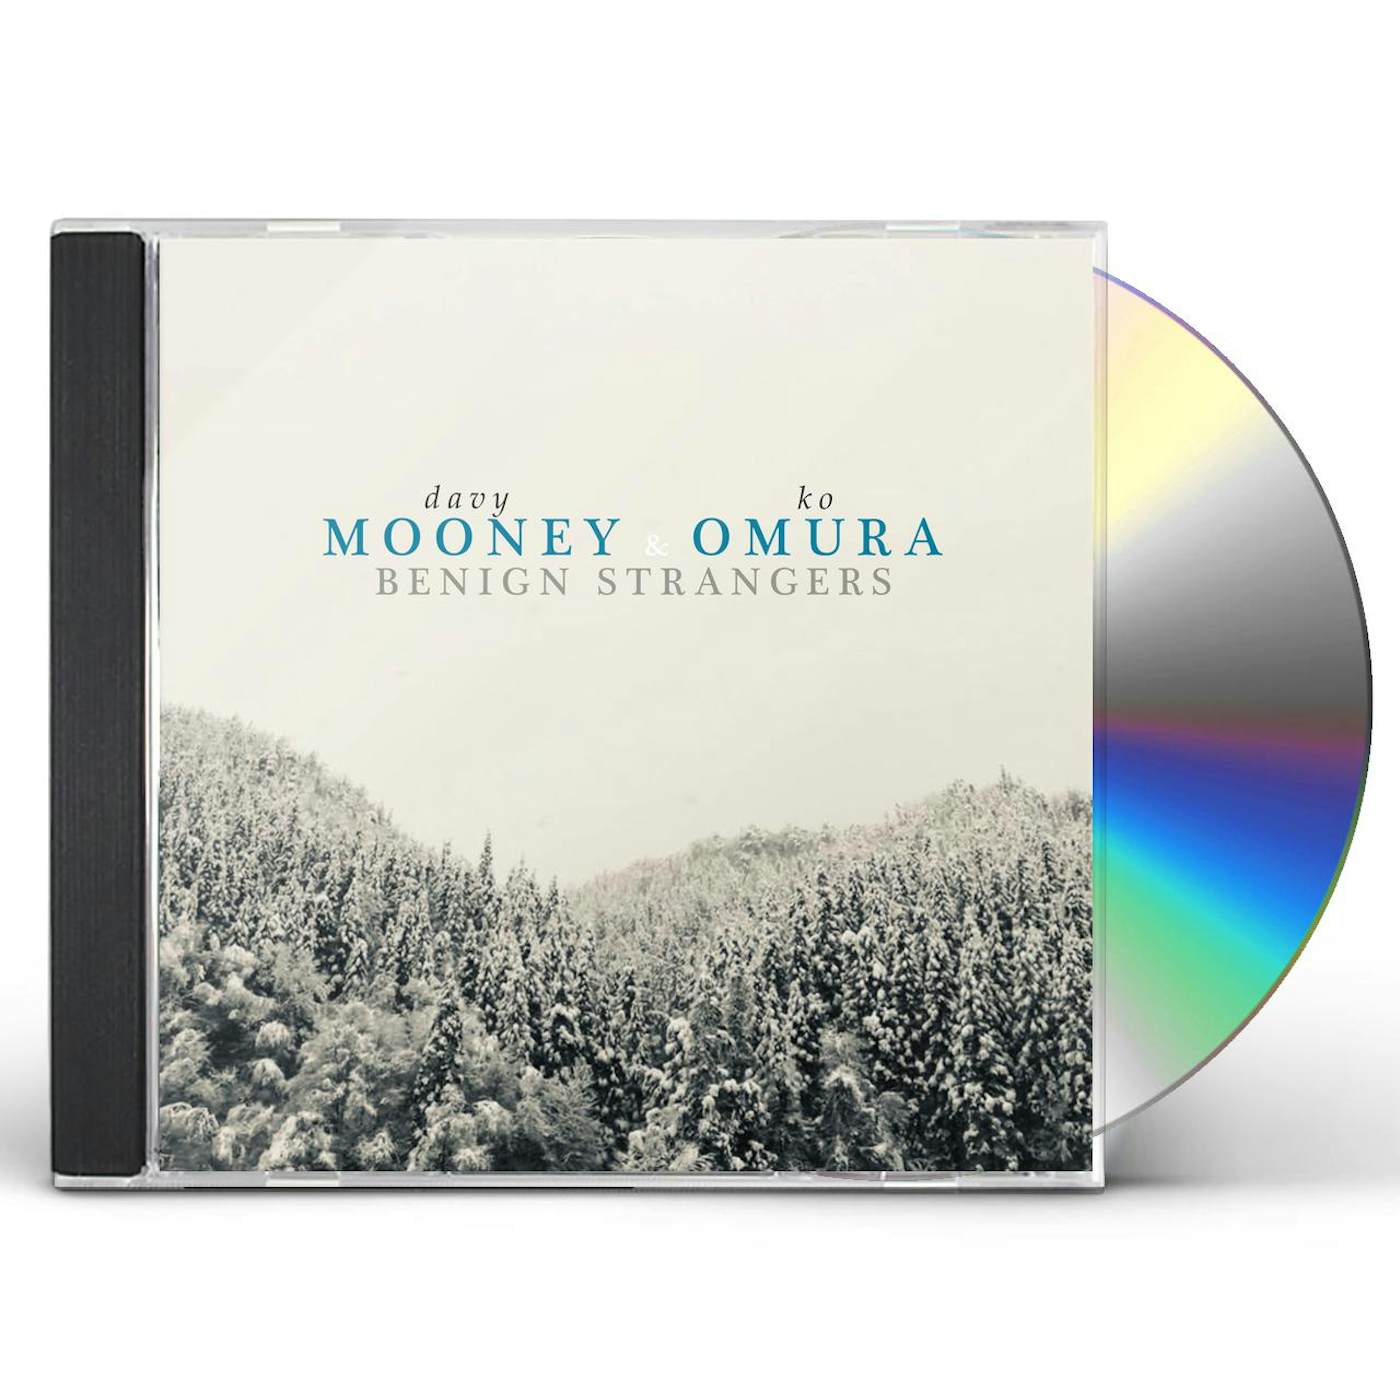 Davy Mooney & Ko Omura BENIGN STRANGERS CD